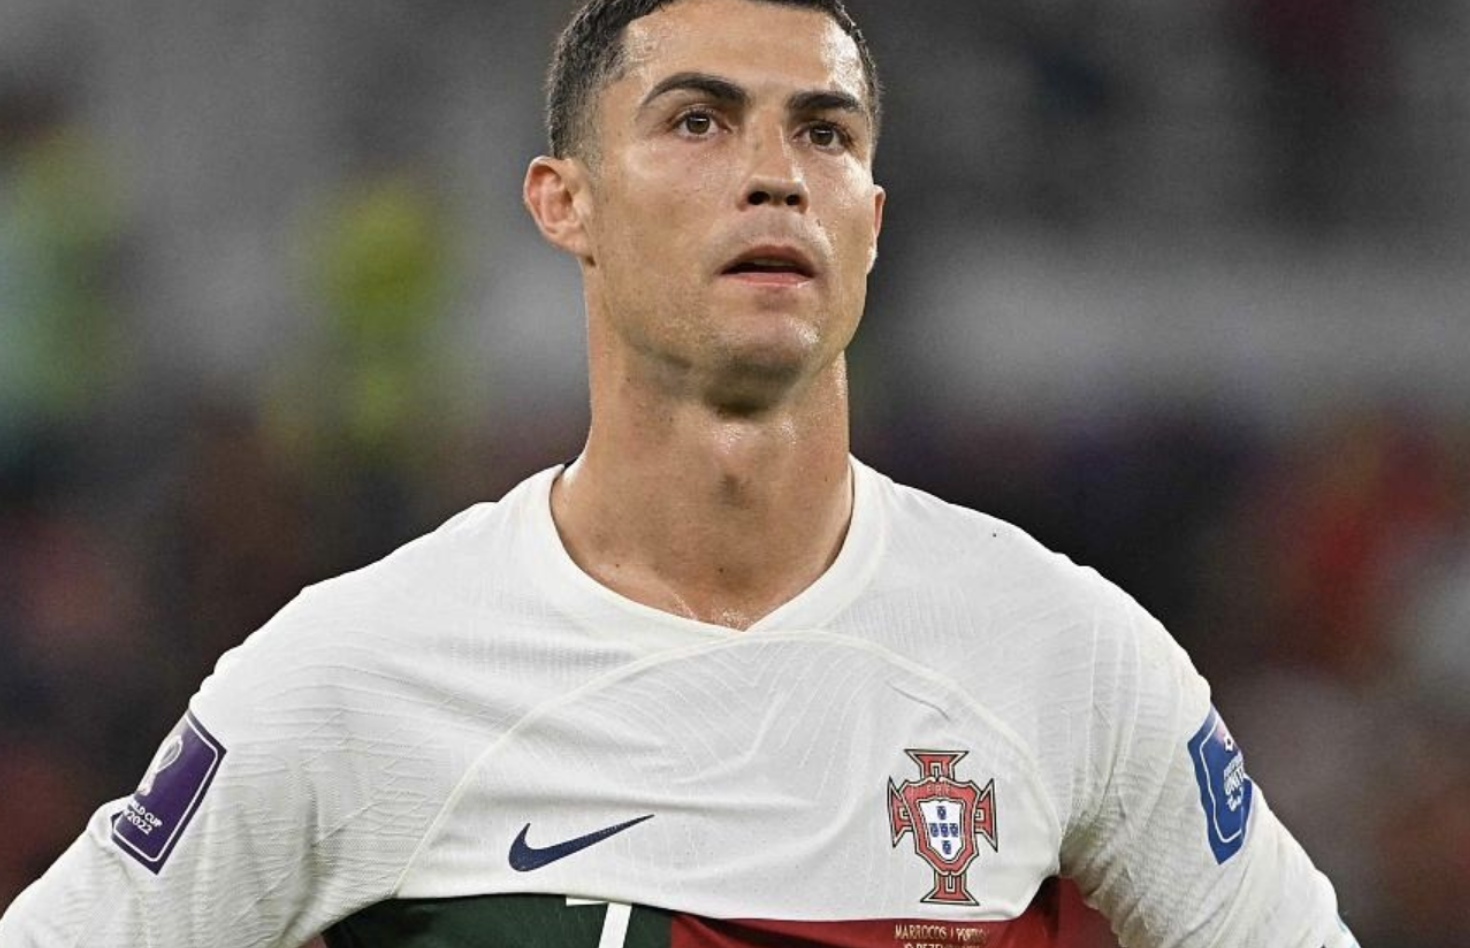 2022世界杯C罗回家!葡萄牙爆冷负摩洛哥遭淘汰 C罗赛后痛哭离开球场